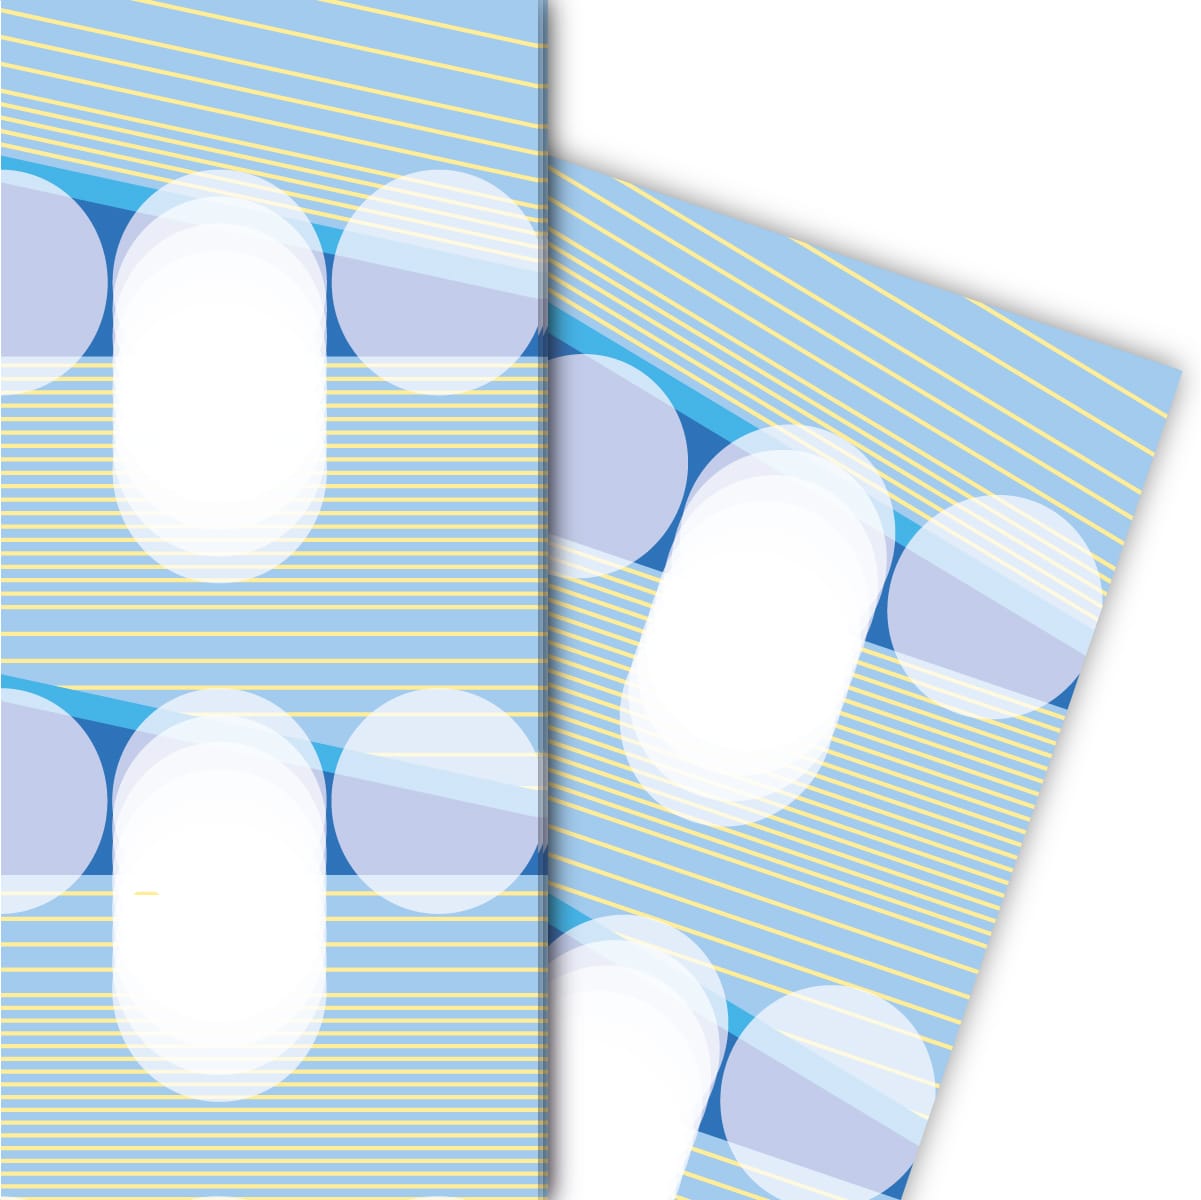 Kartenkaufrausch: Edles Designer Geschenkpapier mit aus unserer Designer Papeterie in blau